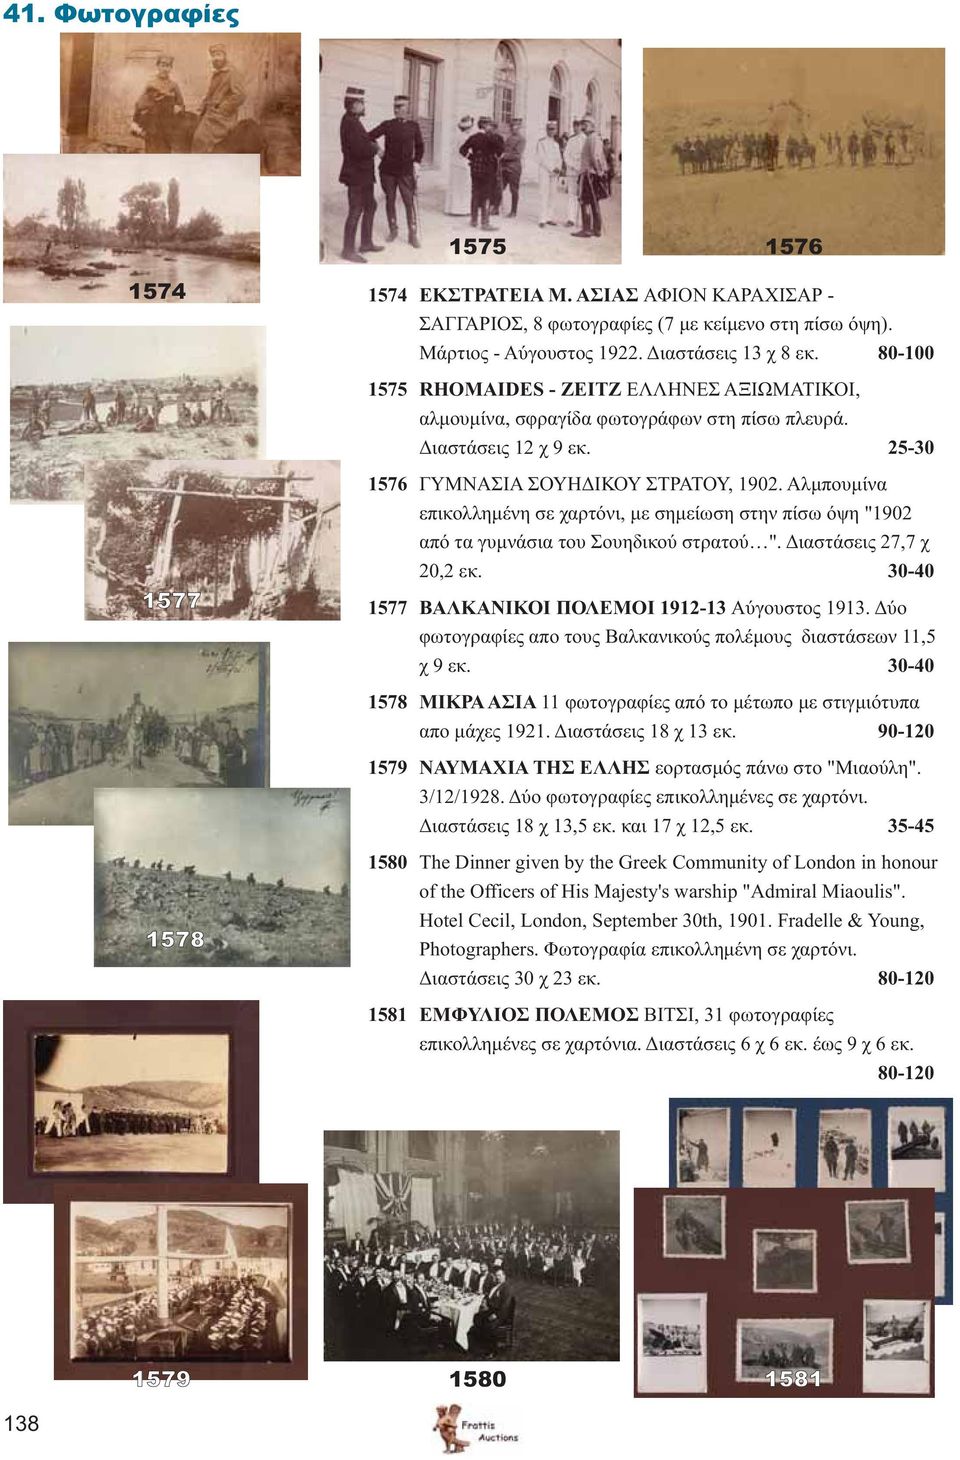 Αλμπουμίνα επικολλημένη σε χαρτόνι, με σημείωση στην πίσω όψη "1902 από τα γυμνάσια του Σουηδικού στρατού ". Διαστάσεις 27,7 χ 20,2 εκ. 30-40 1577 ΒΑΛΚΑΝΙΚΟΙ ΠΟΛΕΜΟI 1912-13 Αύγουστος 1913.